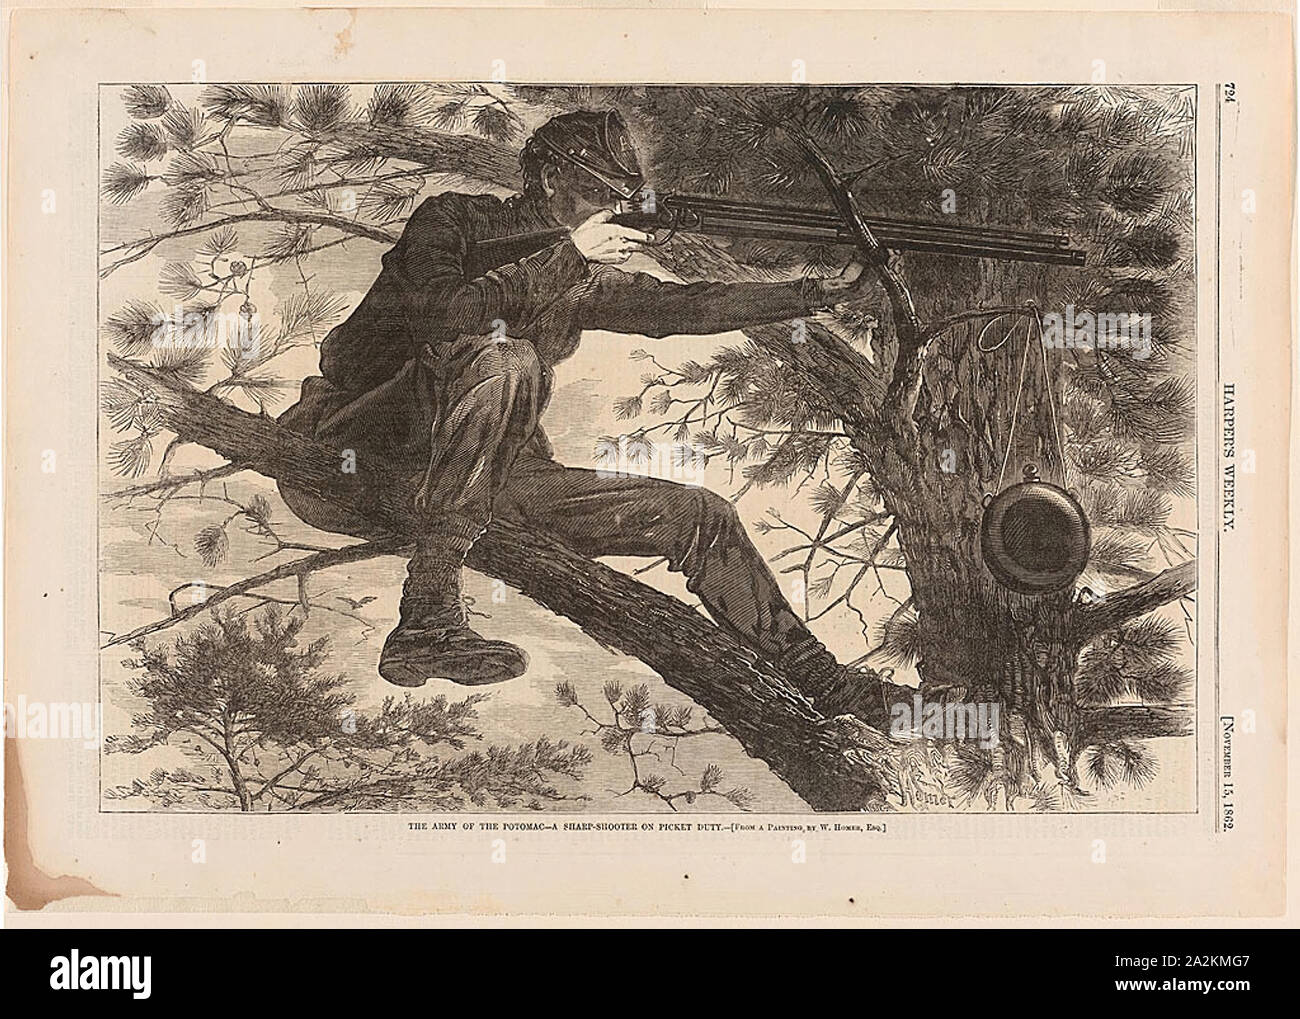 L'esercito del Potomac-Un Sharp-Shooter sul dovere di picchetto, pubblicato il 15 novembre 1862, Winslow Homer (American, 1836-1910), pubblicata da Harper's settimanale (American, 1857-1916), Stati Uniti, incisione su legno su carta, 231 x 349 mm (nell'immagine), 289 x 408 mm (foglio Foto Stock